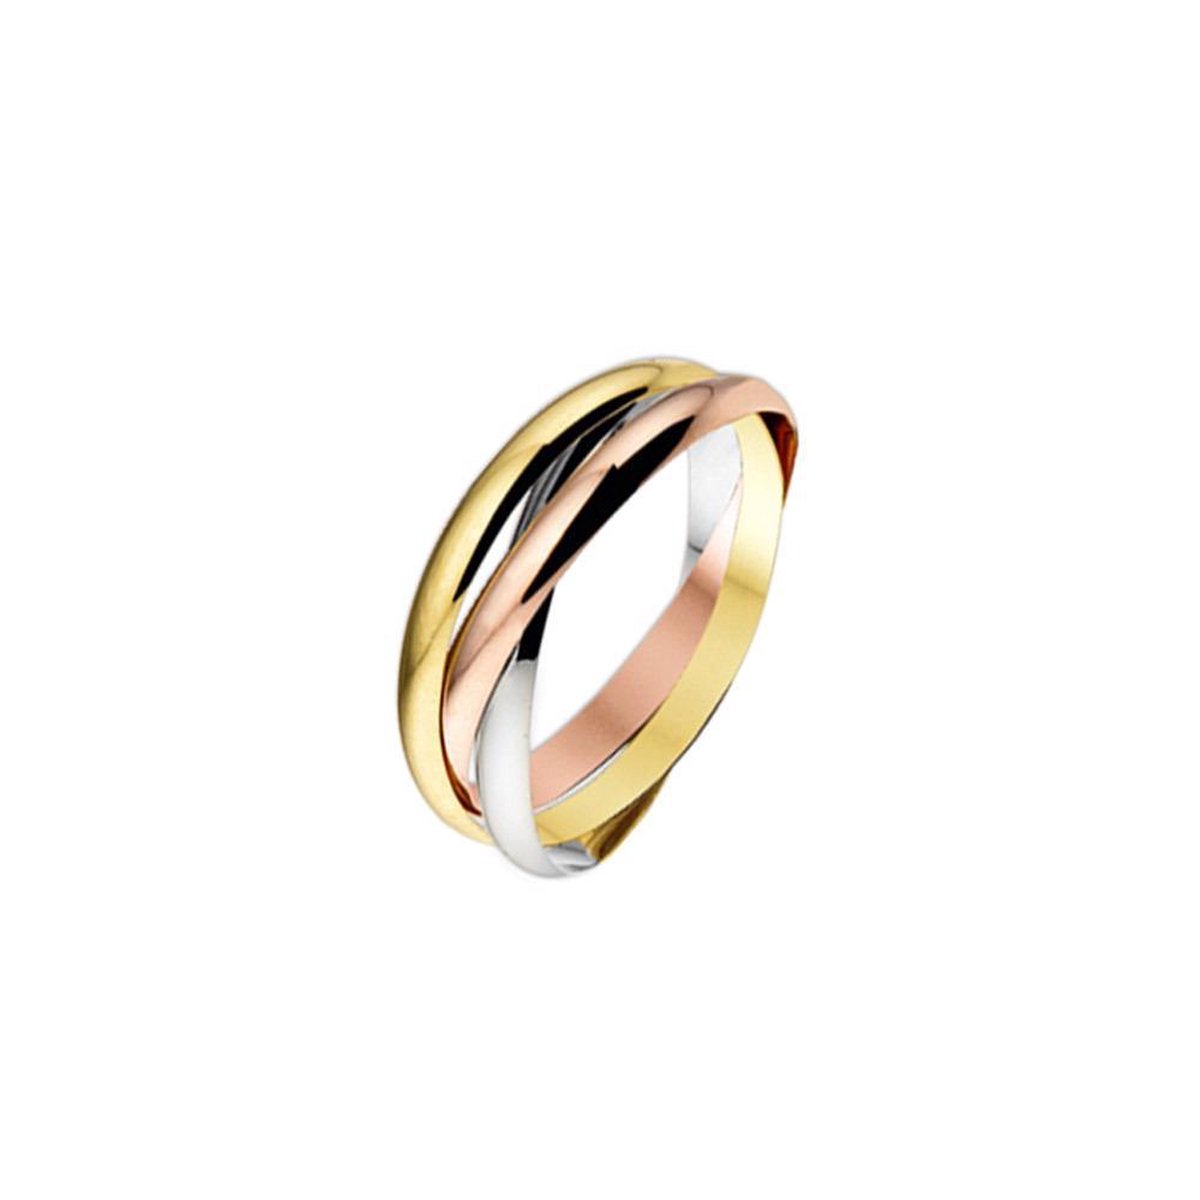 Trendjuwelier huiscollectie 4300457 Tricolor gouden ring 2.5 mm maat 16.5(52)